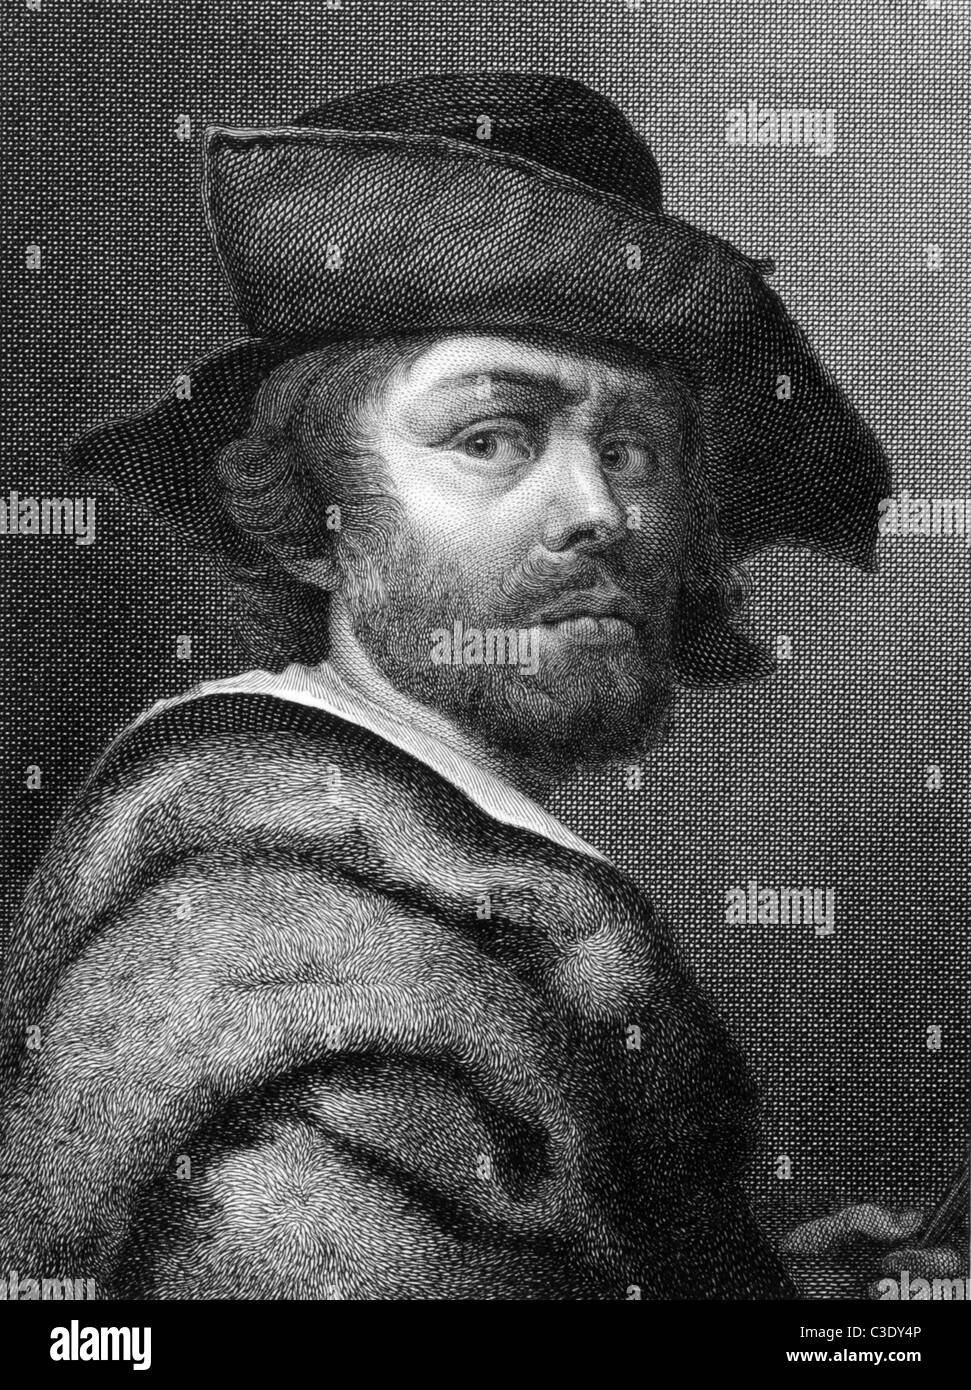 Cristofano Allori (1577-1621) on copper engraving from 1841. Italian baroque portrait painter. Stock Photo